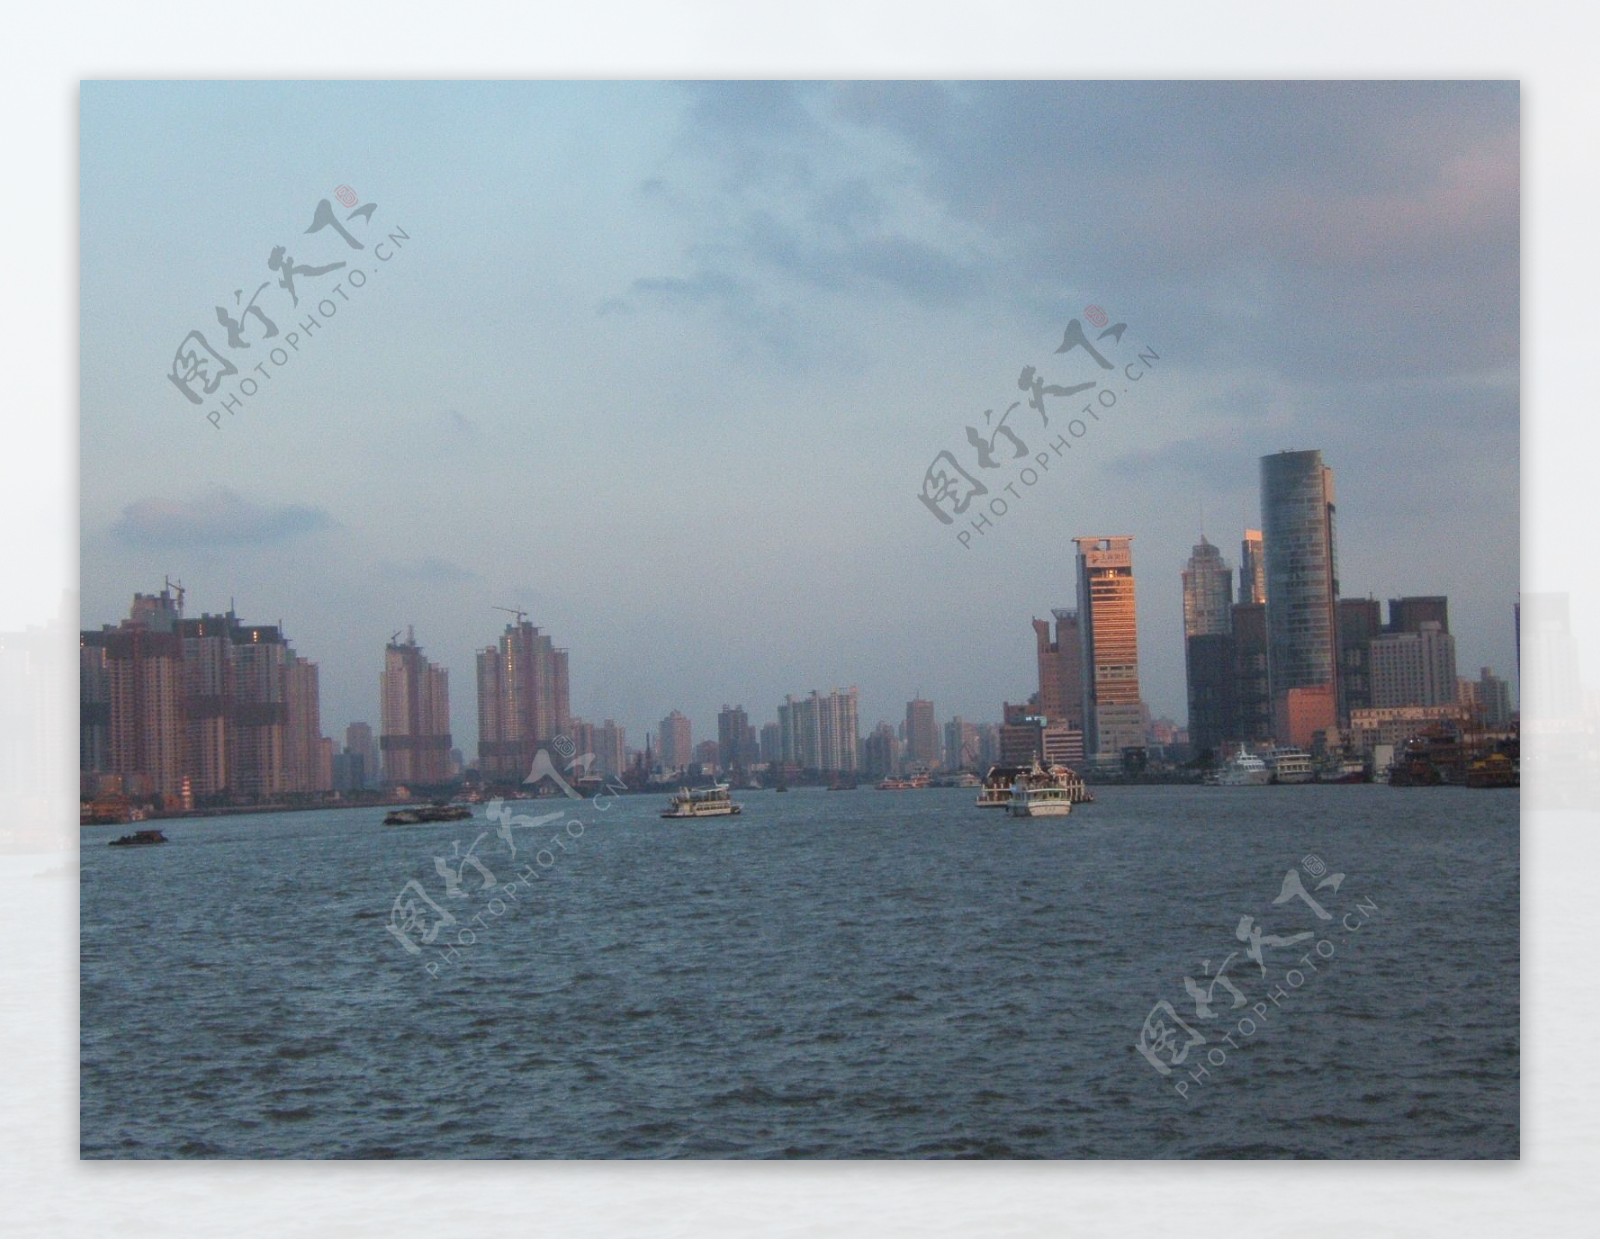 上海江滩风景